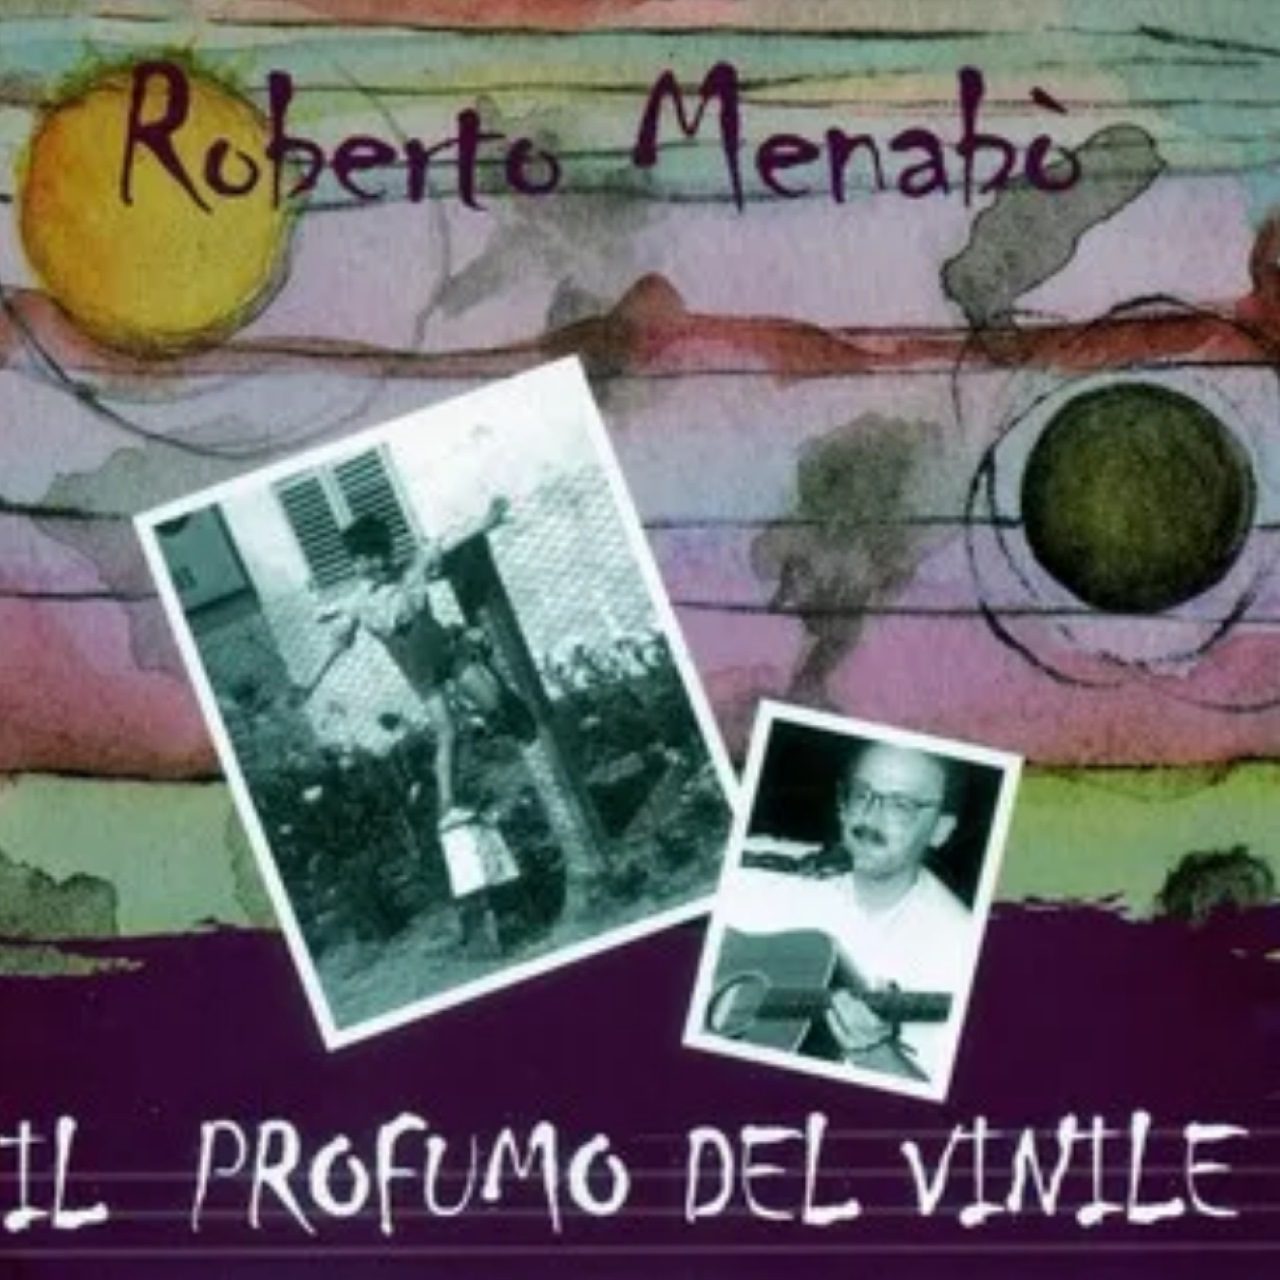 Roberto Menabò – Il Profumo Del Vinile cover album